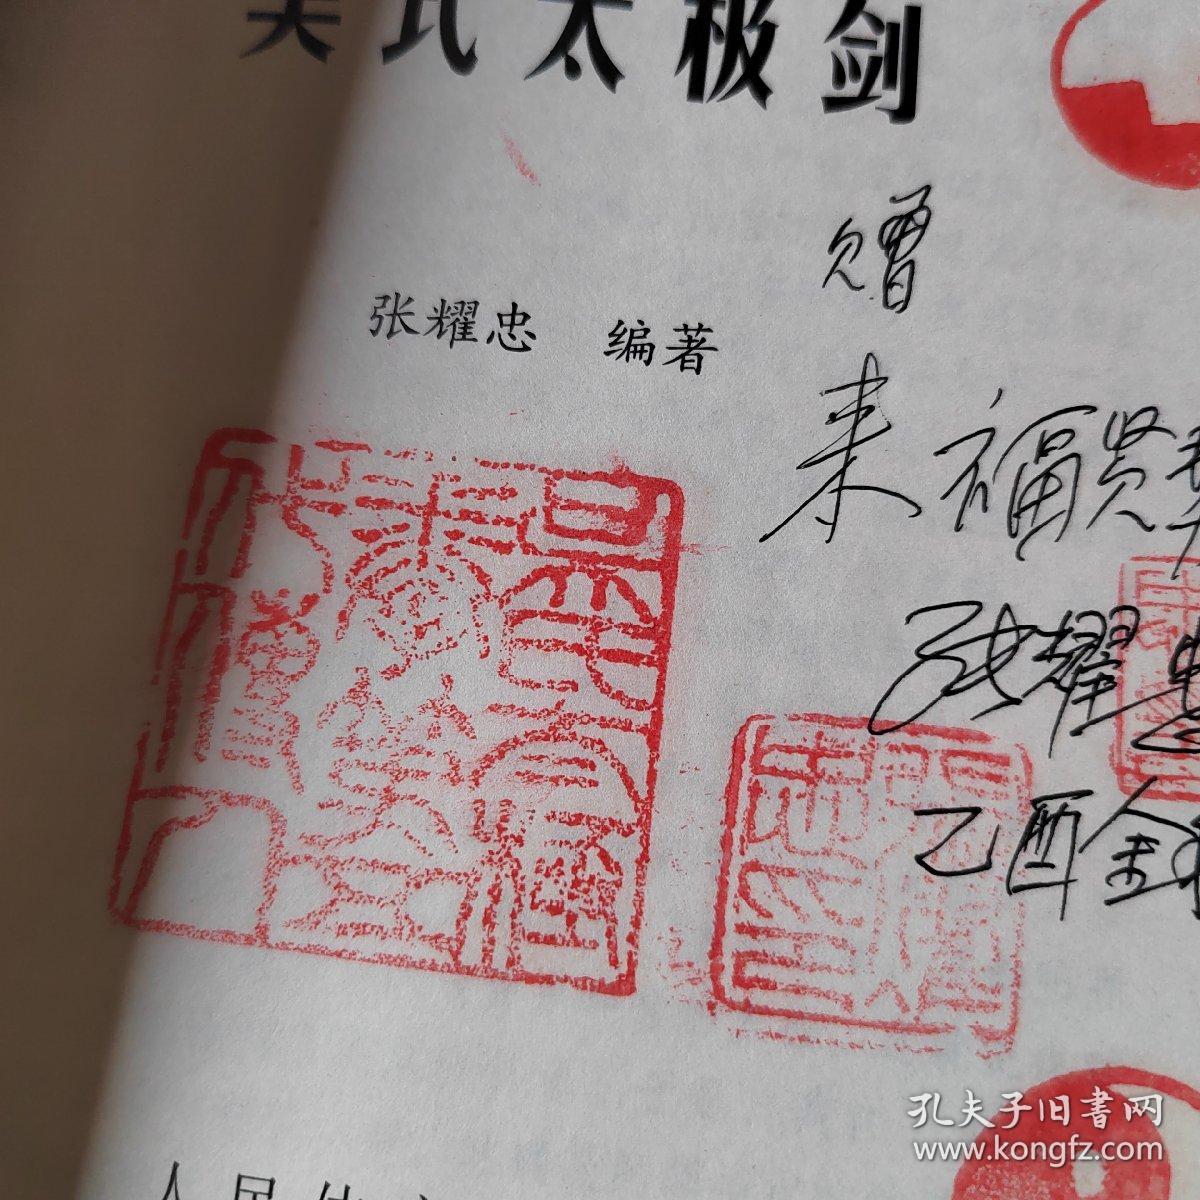 王培生传吴式太极剑 签名铃印 书后皮如图